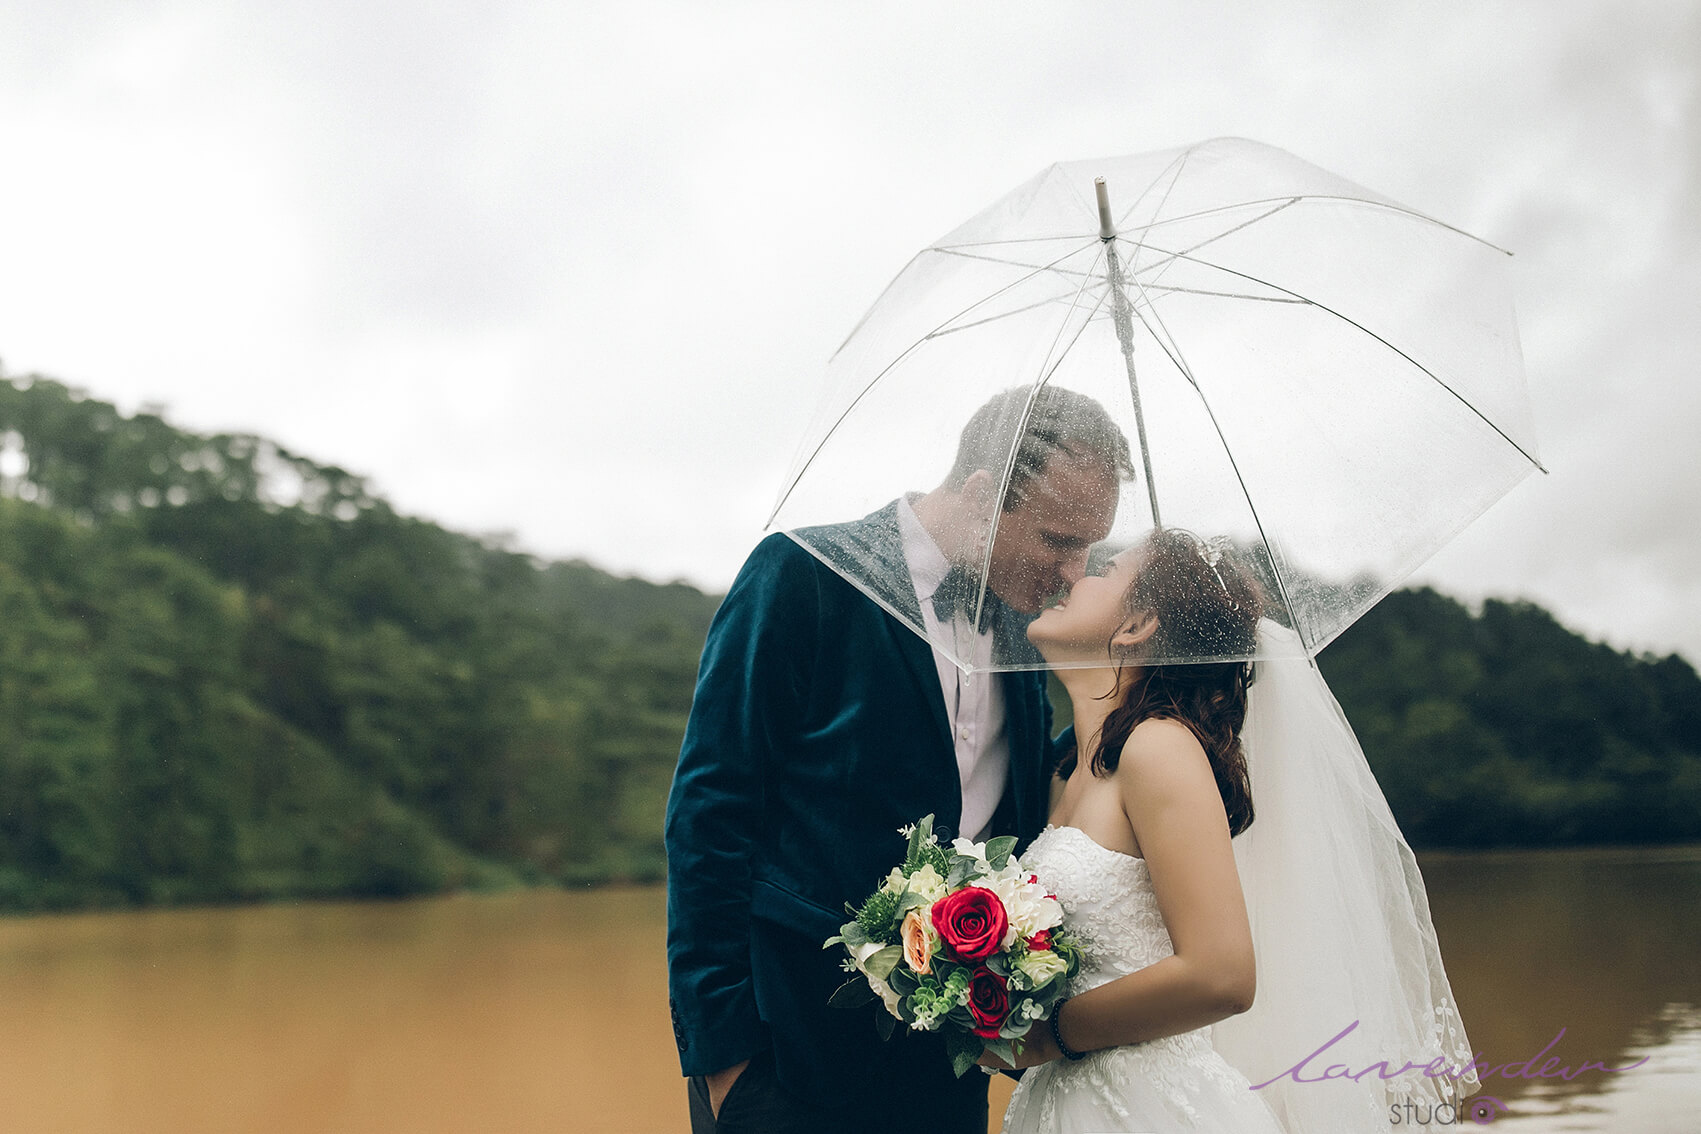 chụp ảnh cưới dưới mưa